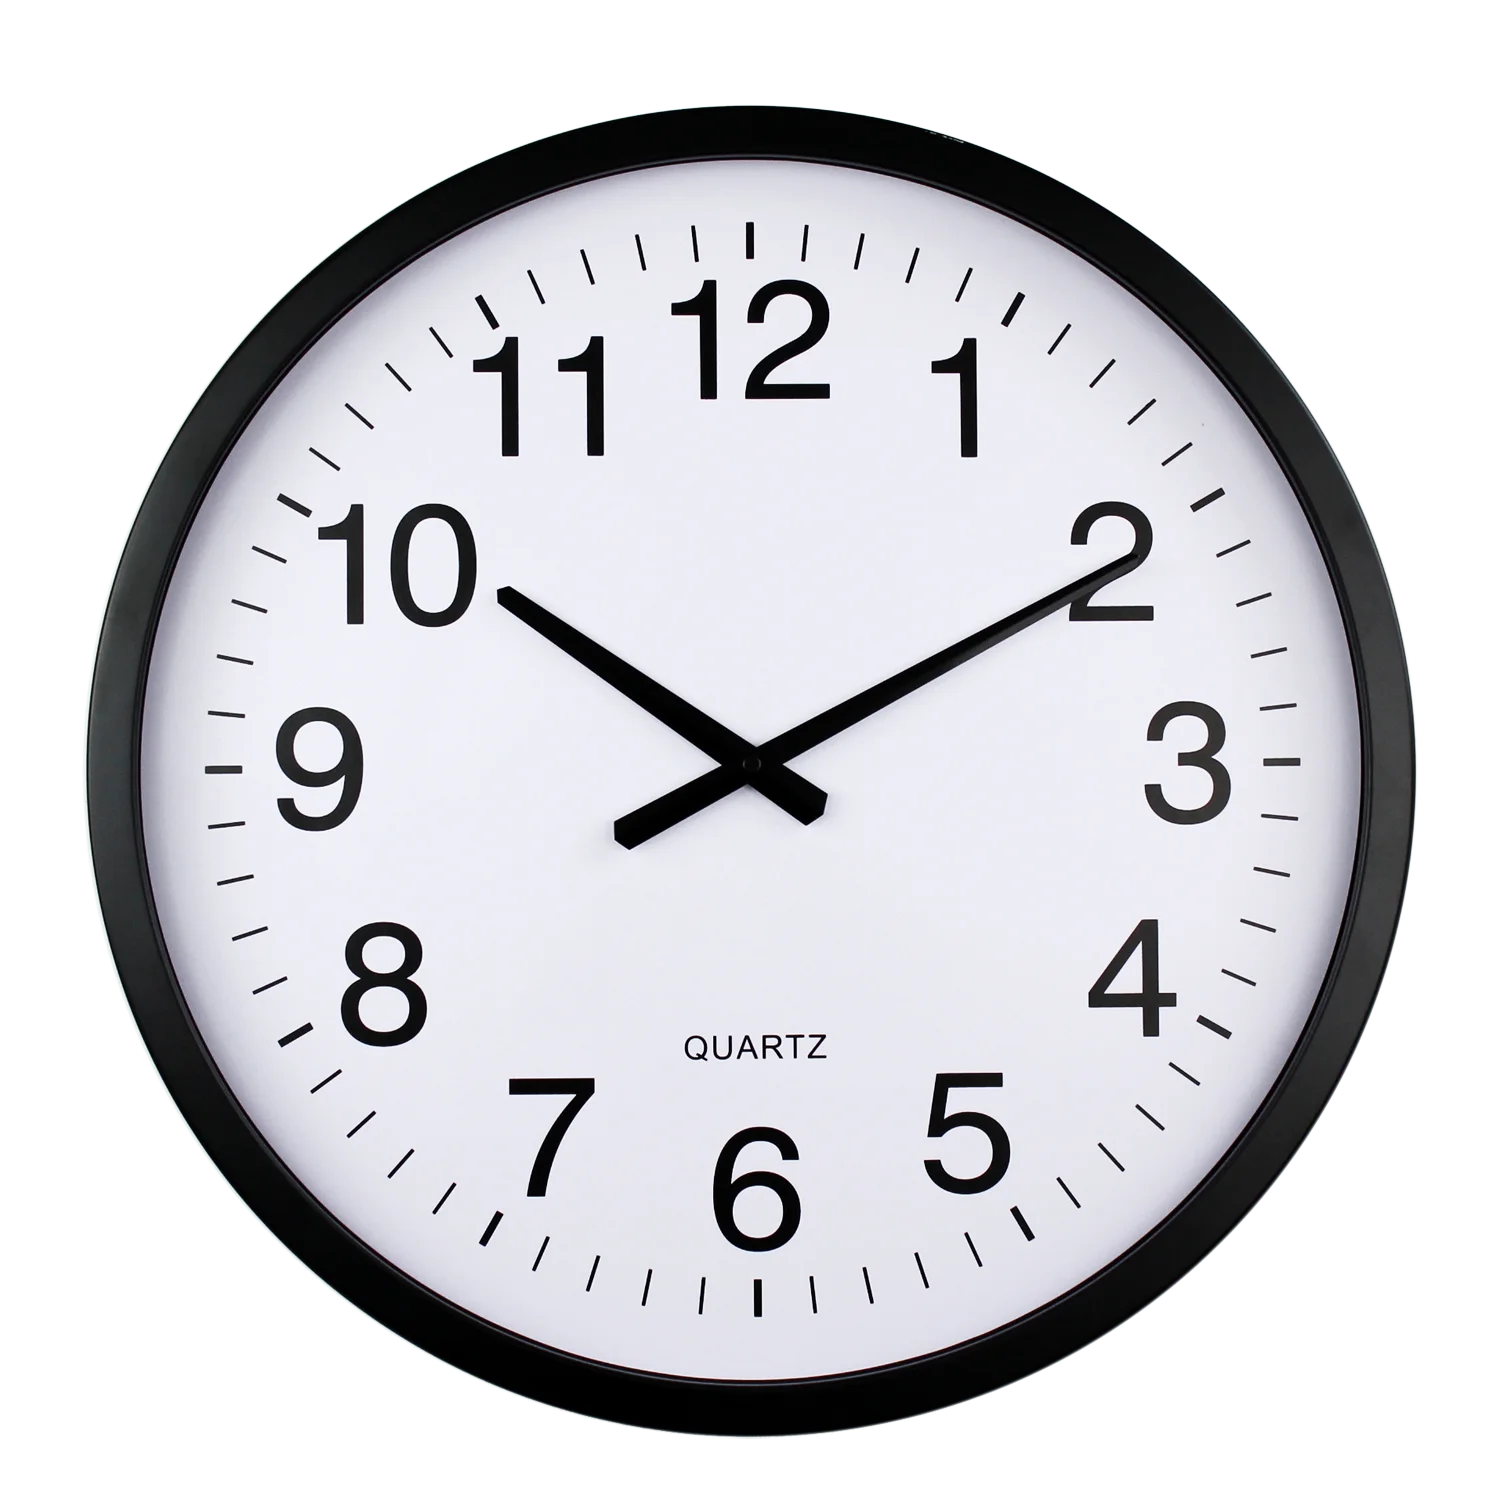 Настенные часы с минутами. Цифровые настенные часы. Современные настенные часы. Часы круглые. Часы настенные на прозрачном фоне.